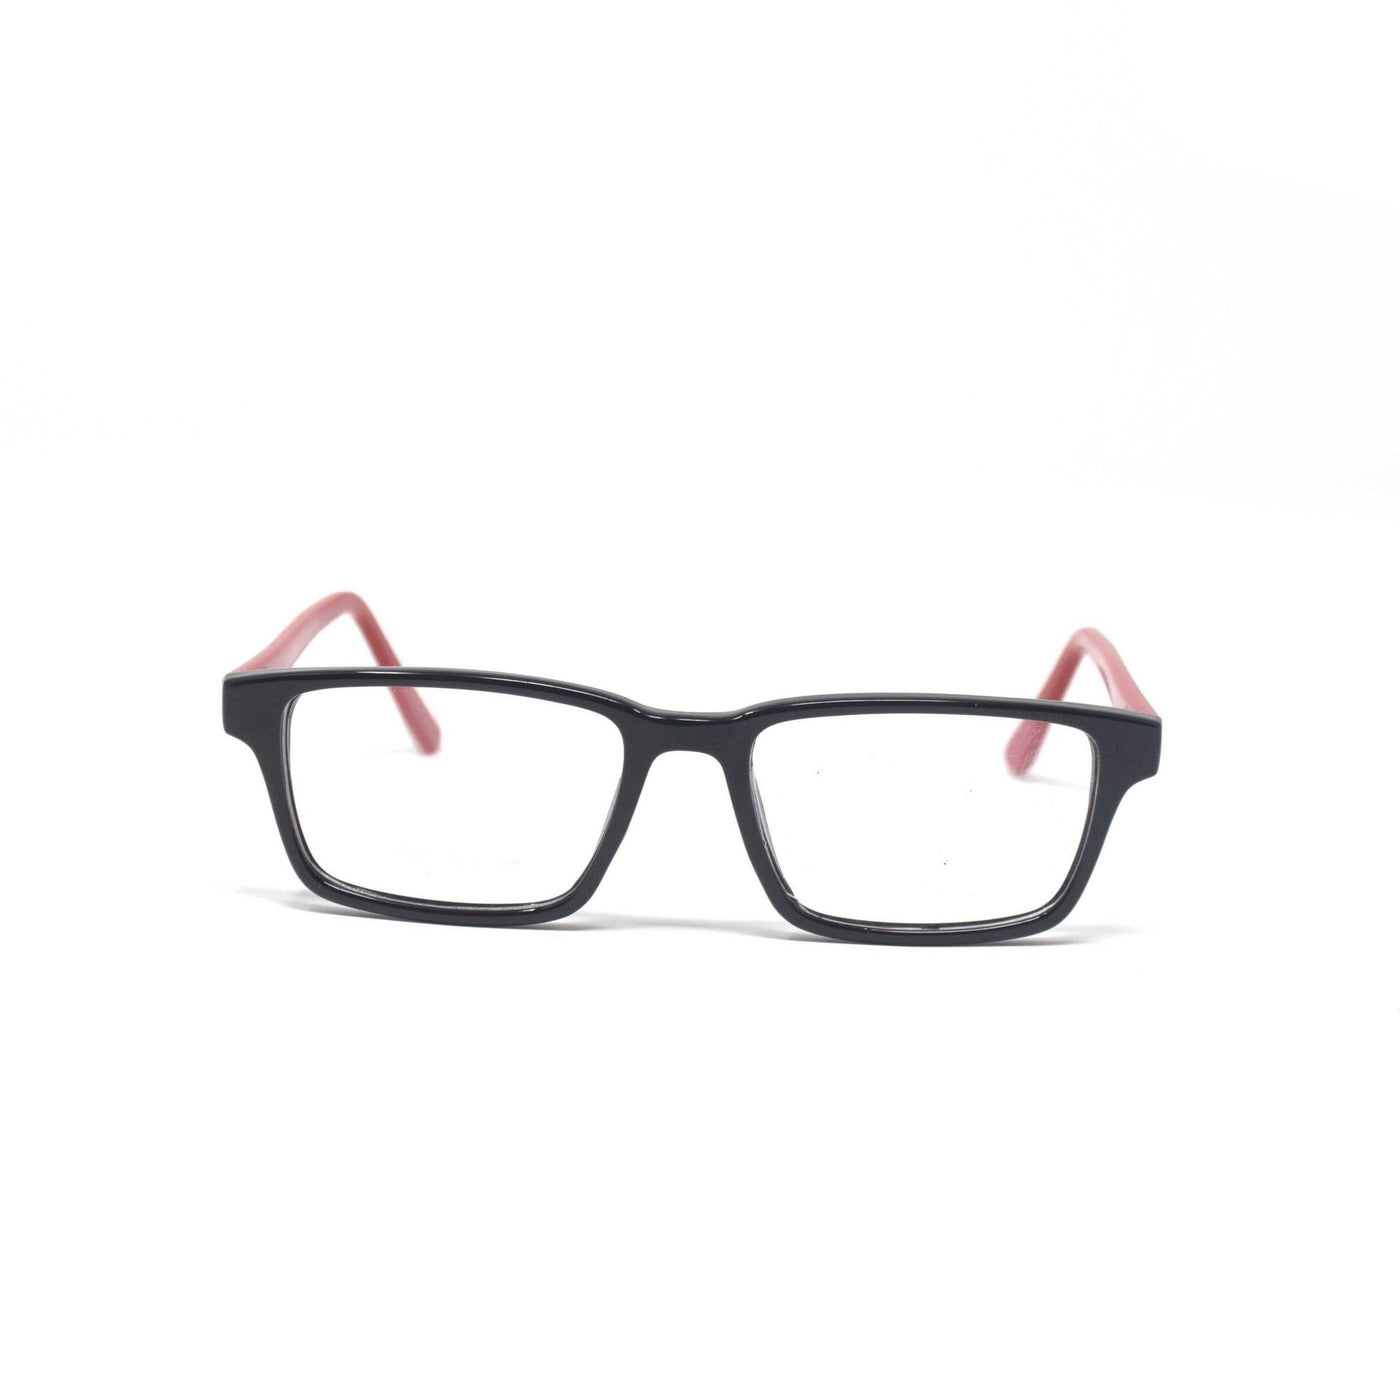 Stylish Retro Square Black Red Optical Eyewear